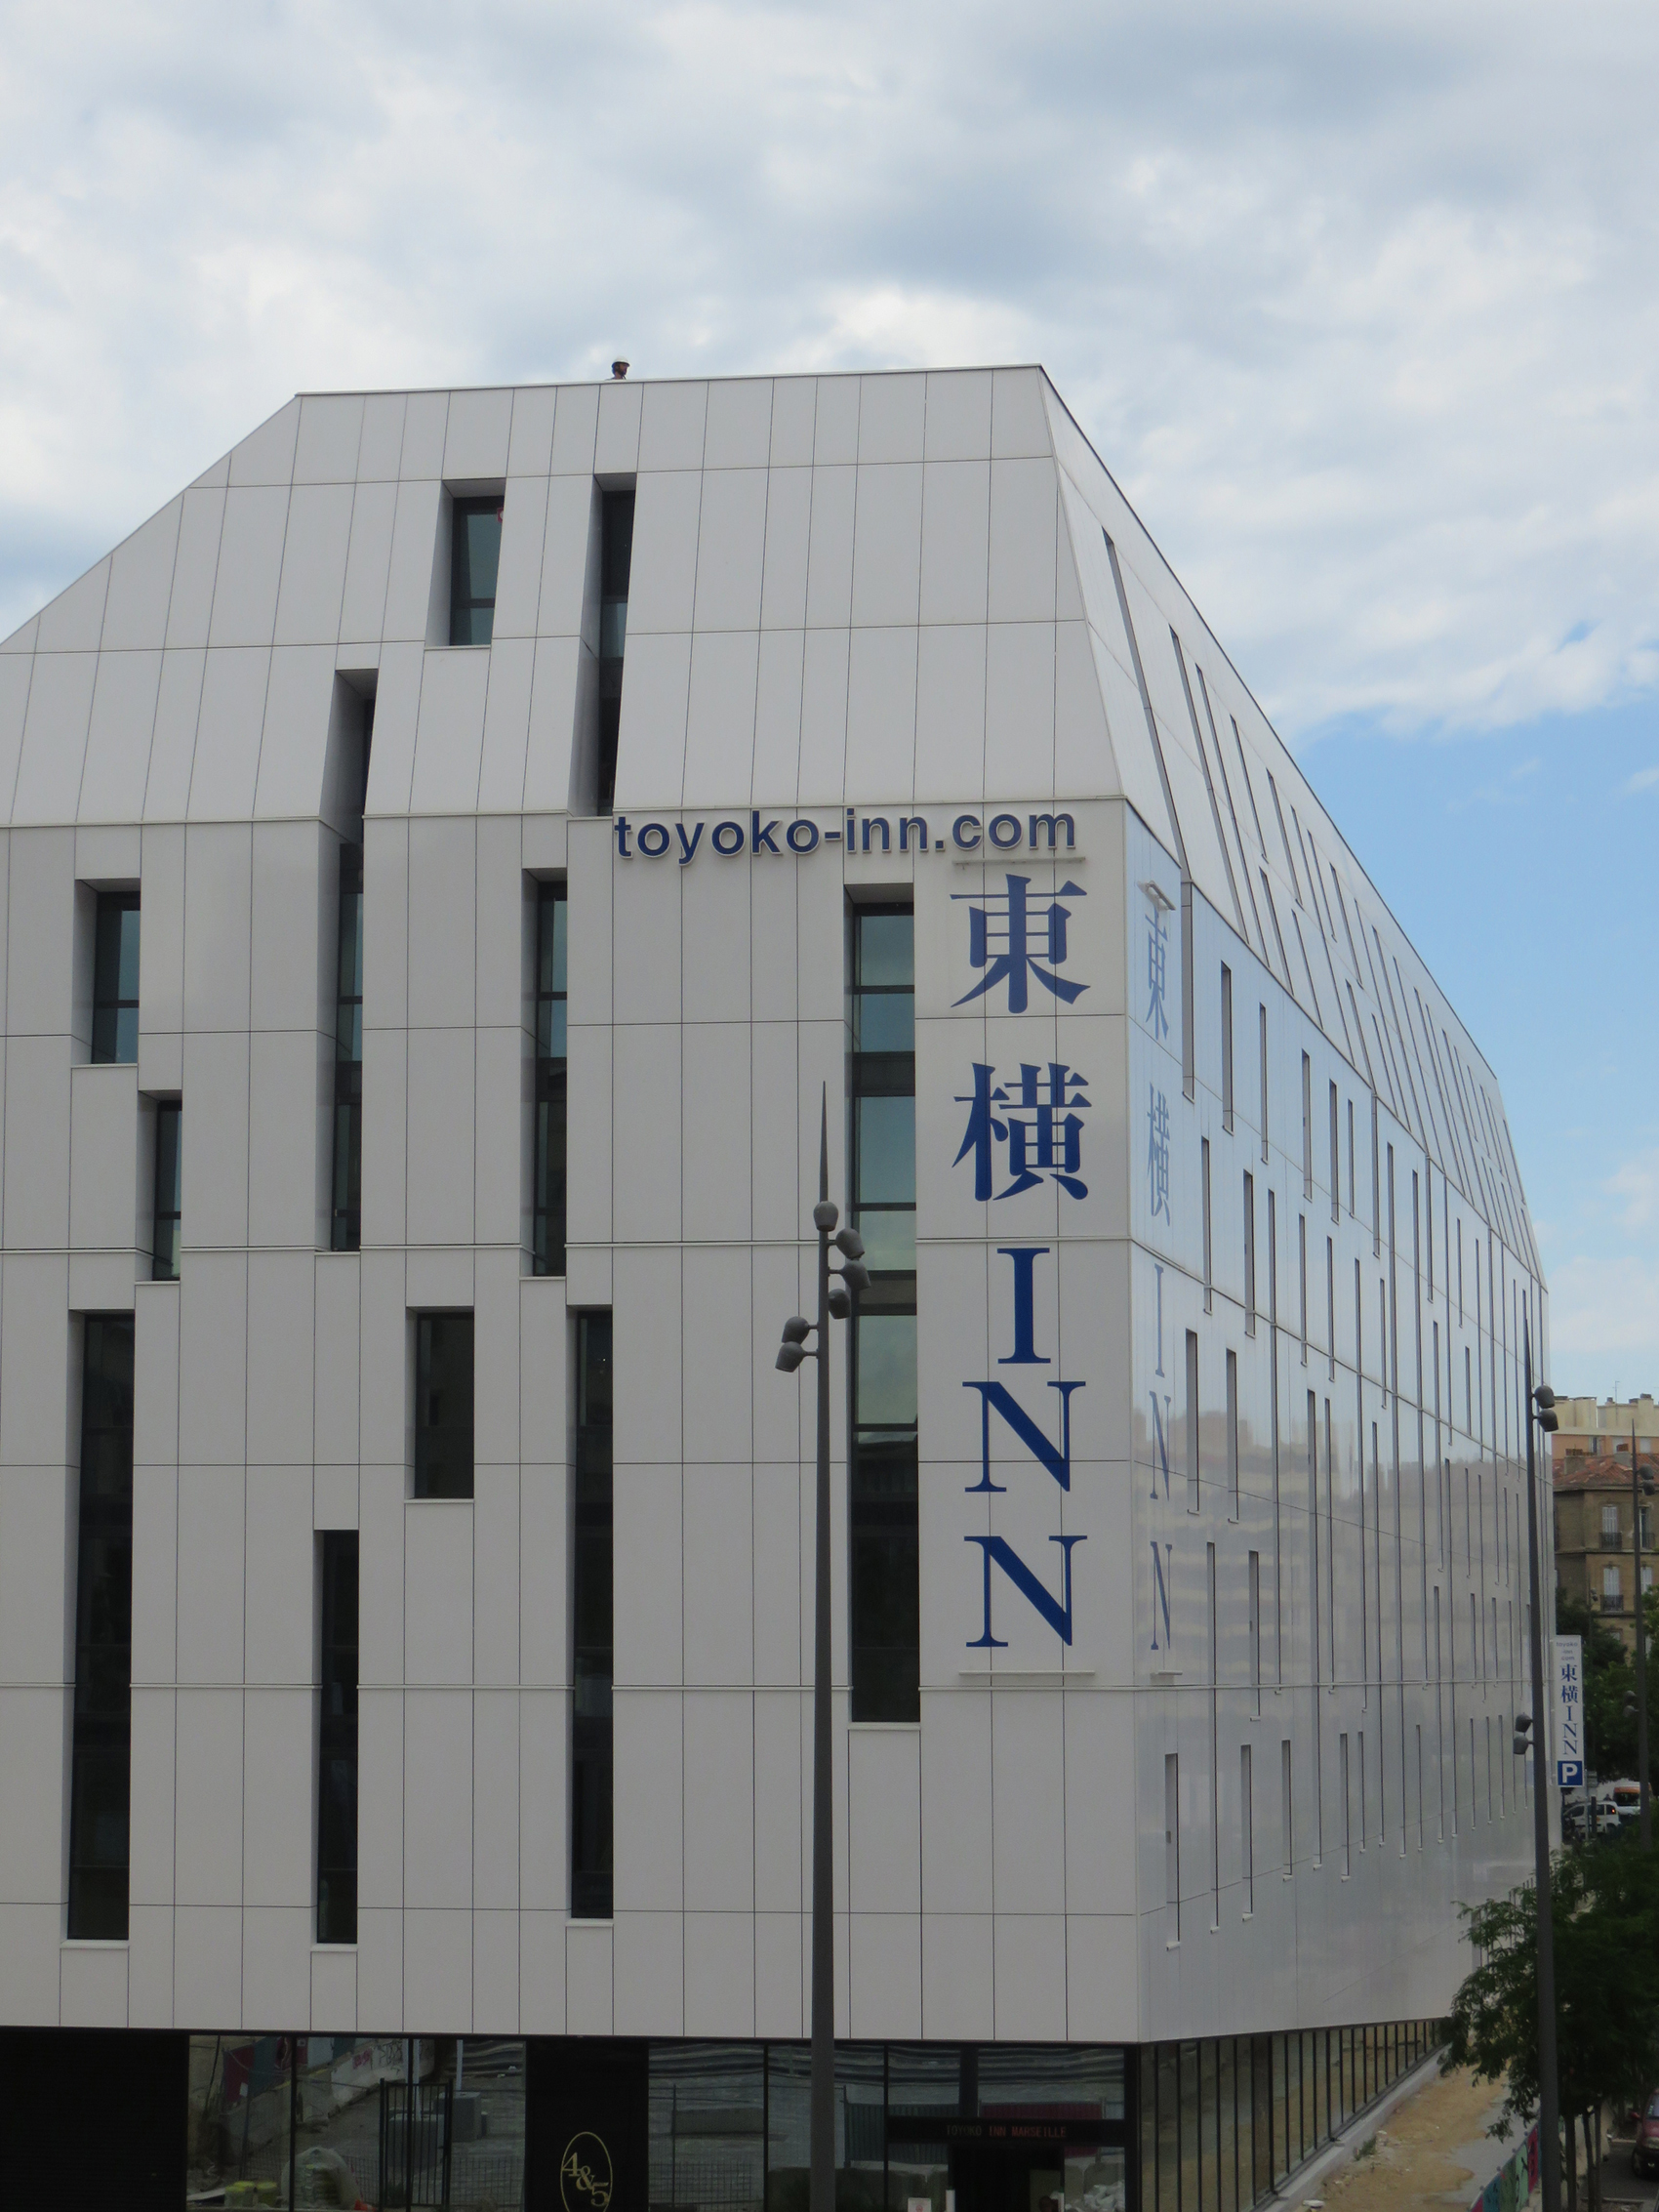 Pour son premier hôtel en France, la chaîne hôtelière nippone Toyoko Inn choisit les performances acoustiques du système FRIAPHON® de GIRPI